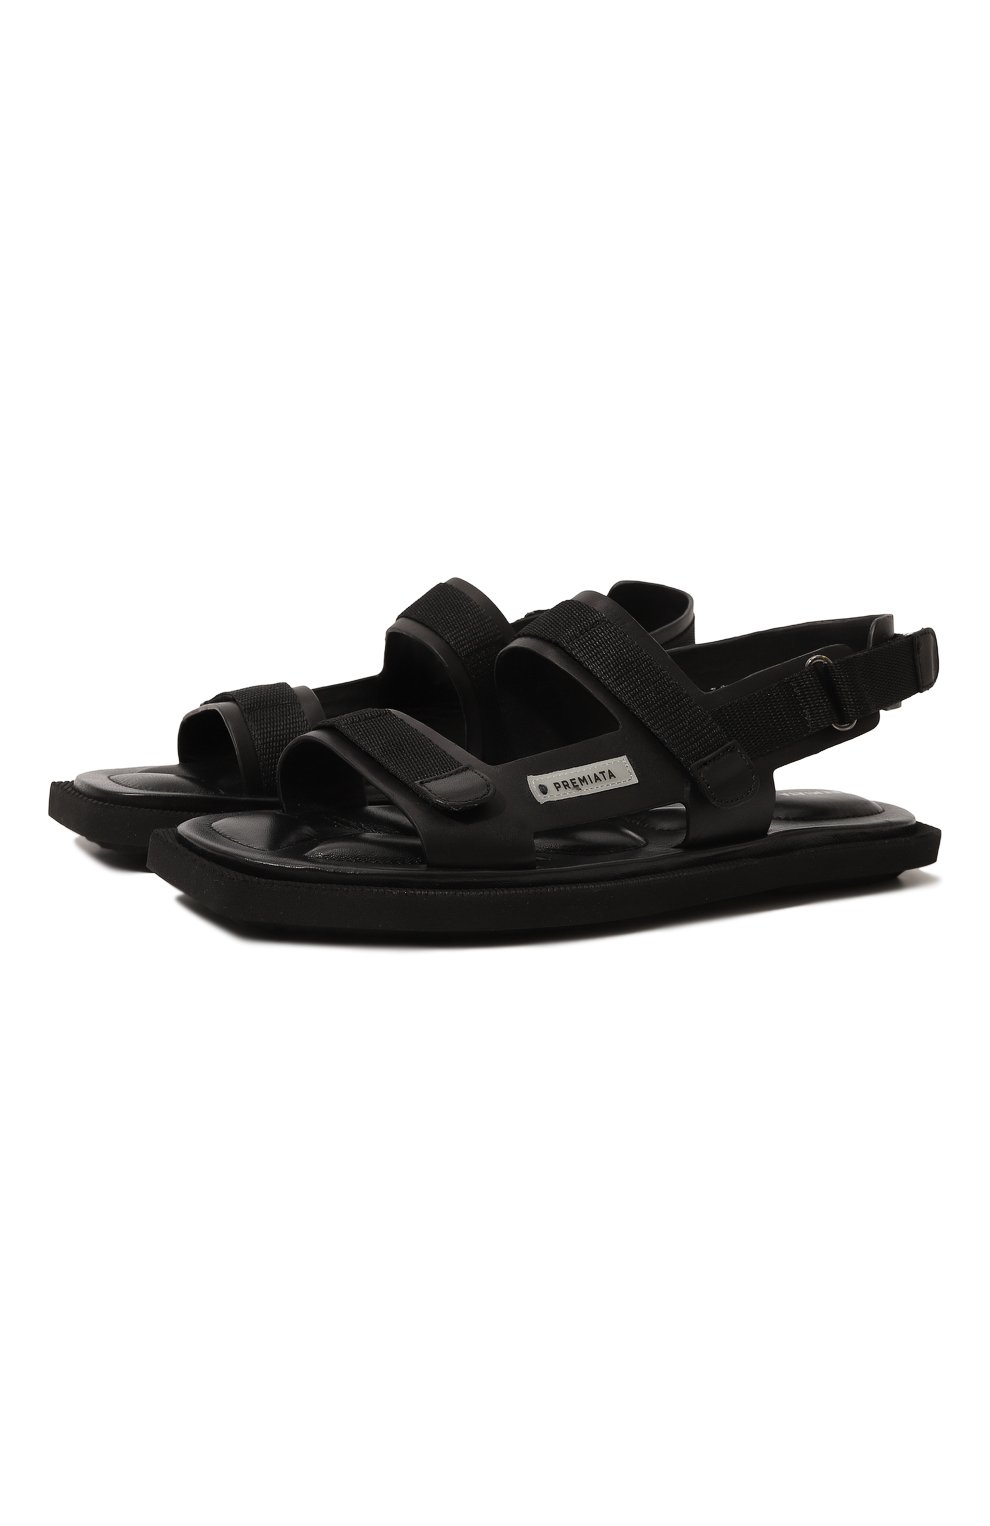 Кожаные сандалии Premiata M6433/VANITY, цвет чёрный, размер 37.5